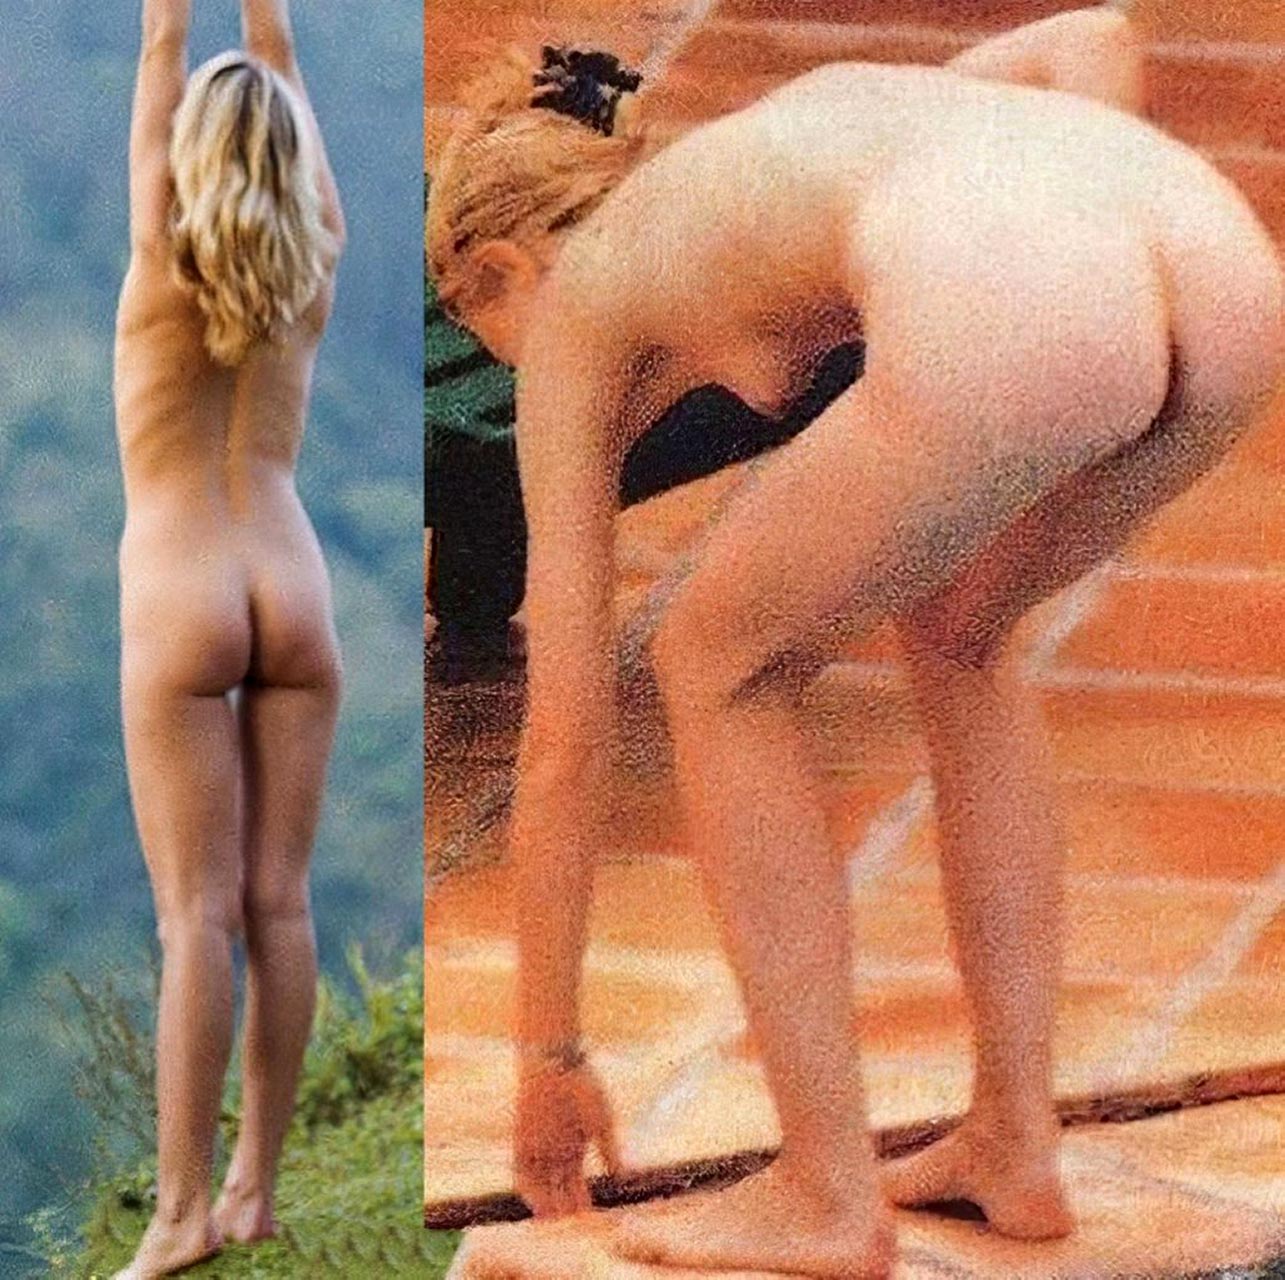 Gwyneth Paltrow nude pics.